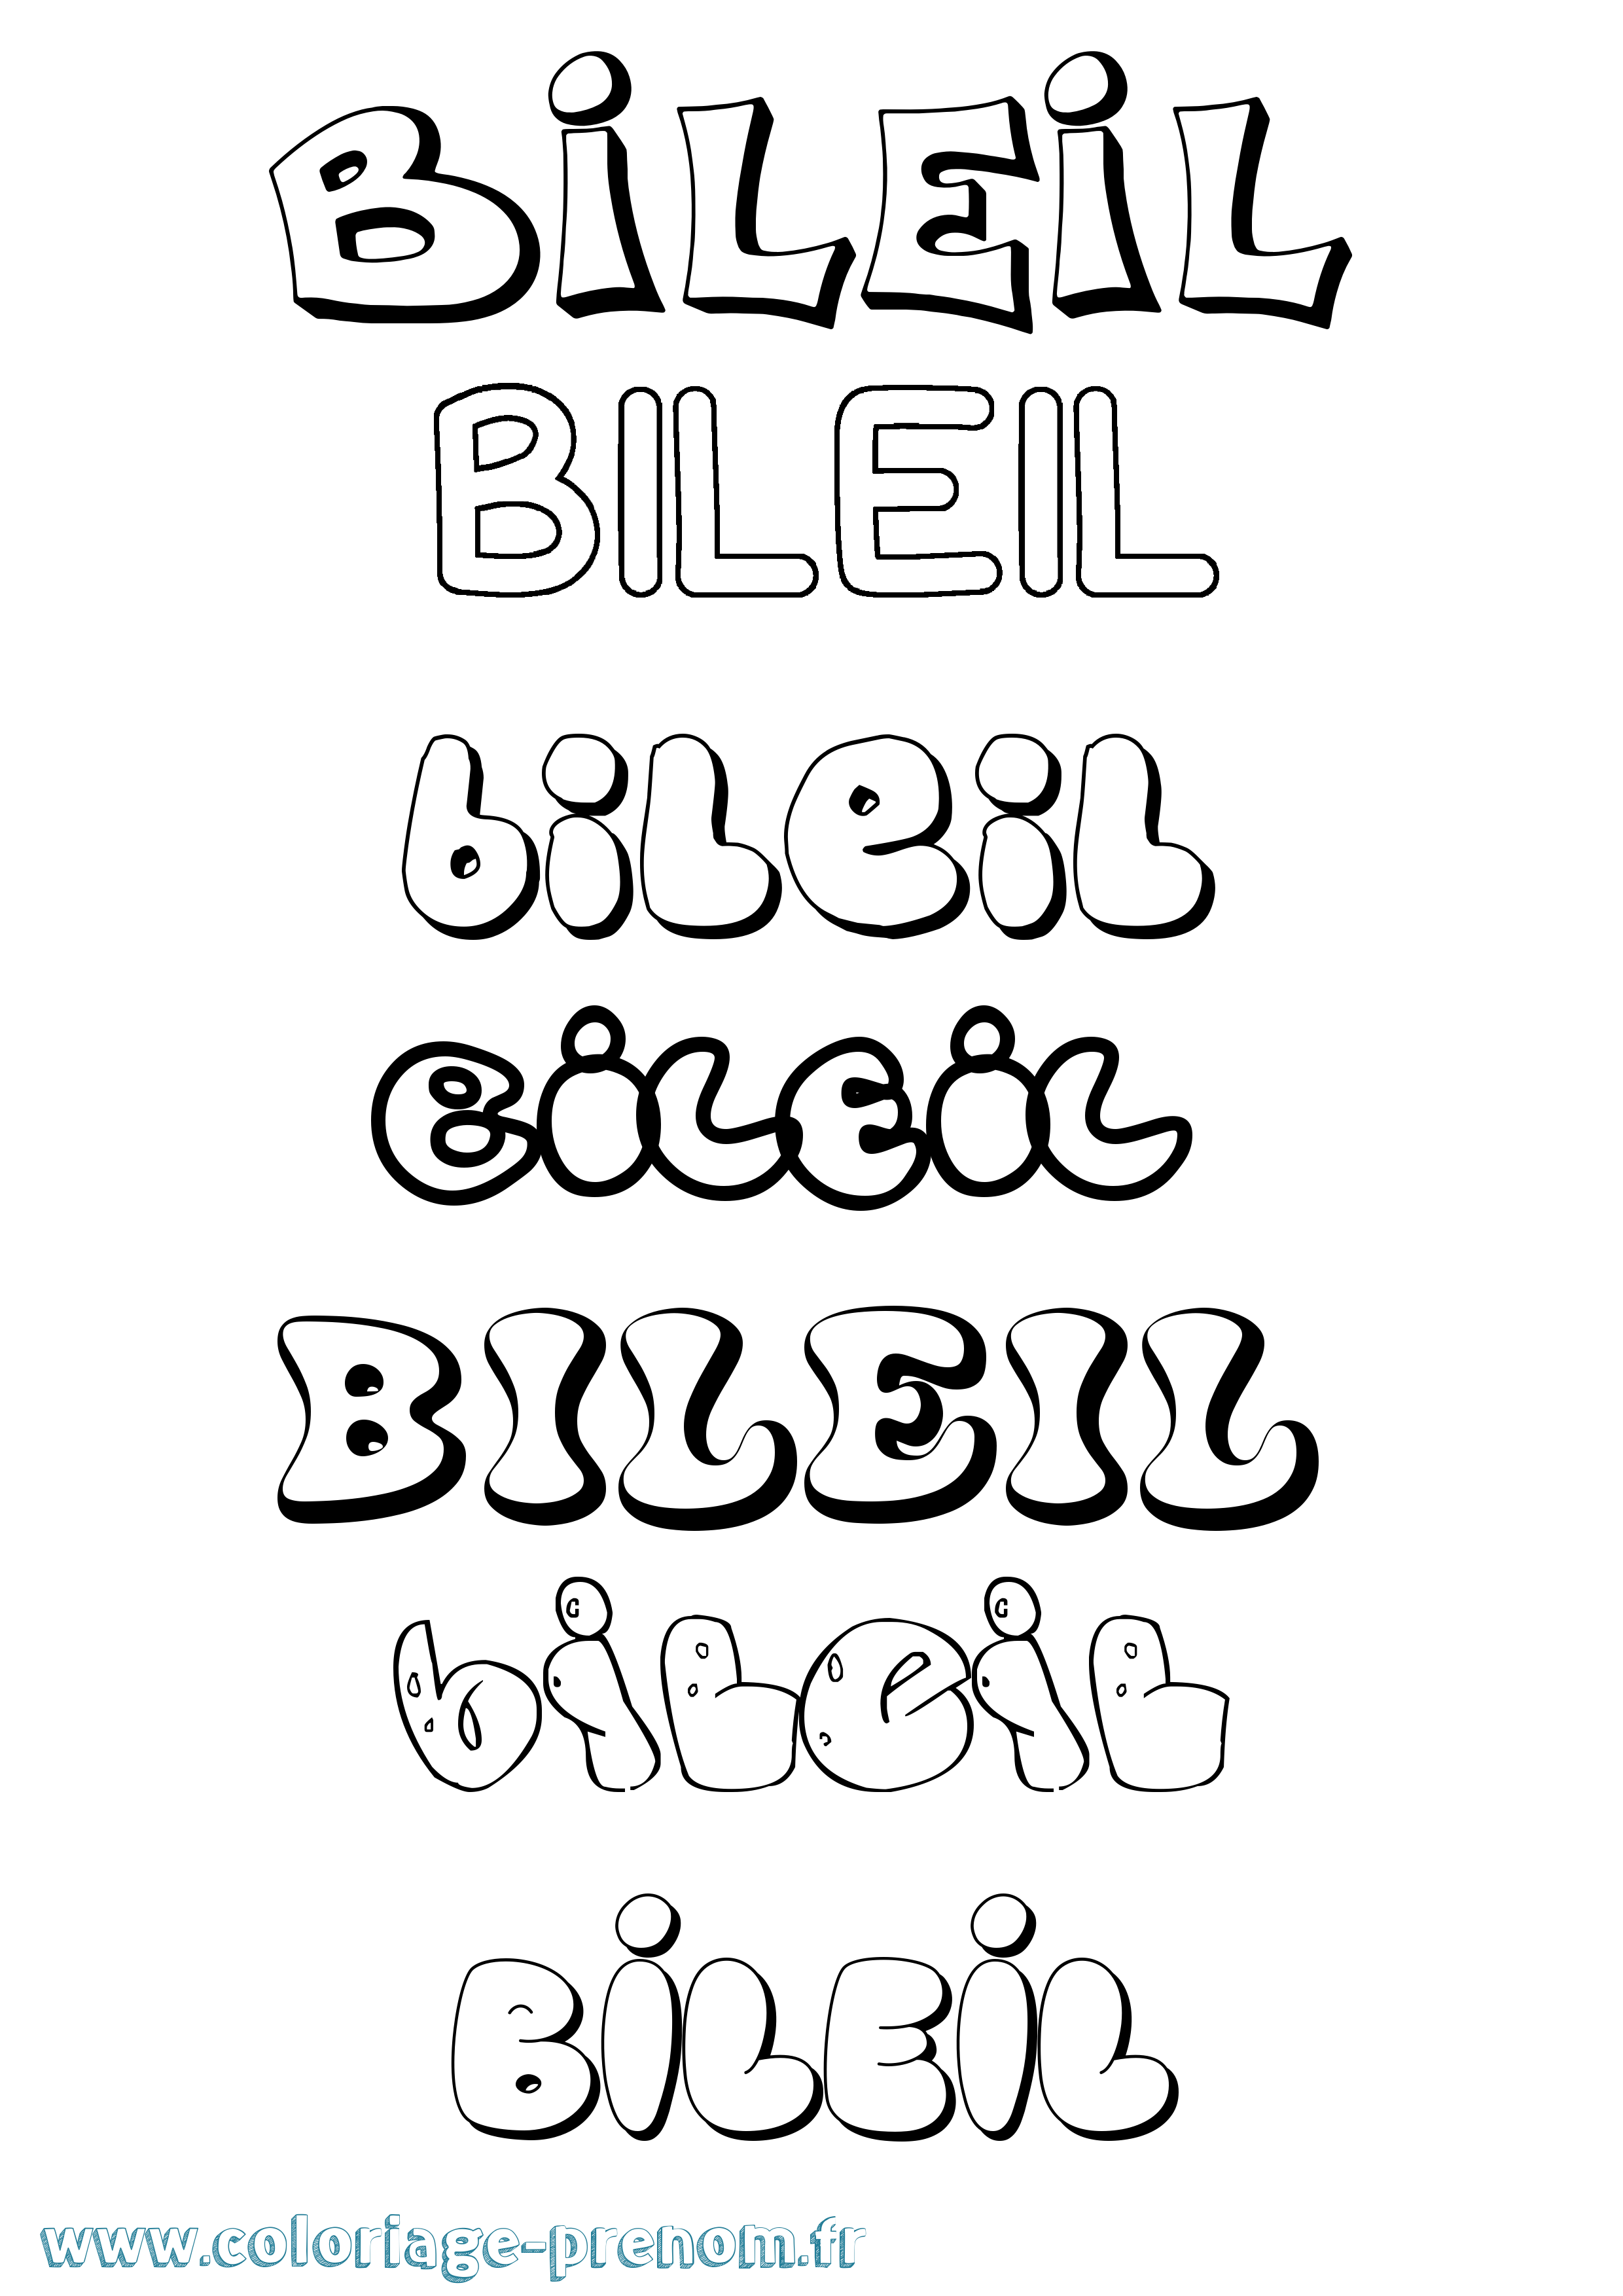 Coloriage prénom Bileil Bubble